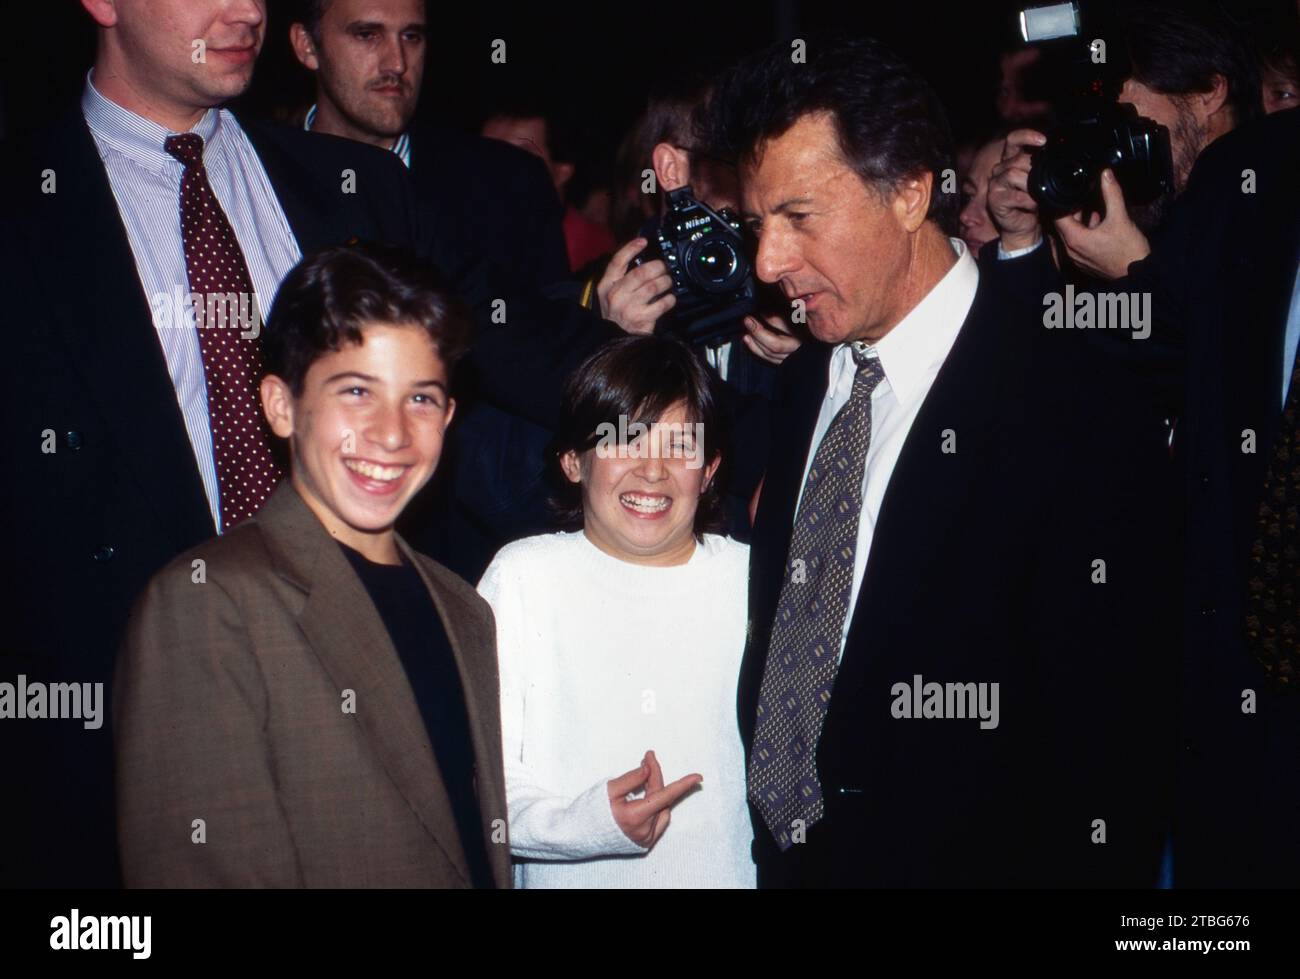 Schauspieler Dustin Hoffman mit seinen Söhnen, der amerikanische Filmstar ist angereist zur Deutschland-Premiere des Wolfgang Petersen Films: Outbreak, 1995, darin spielt Hoffman die Hauptrolle. Stock Photo